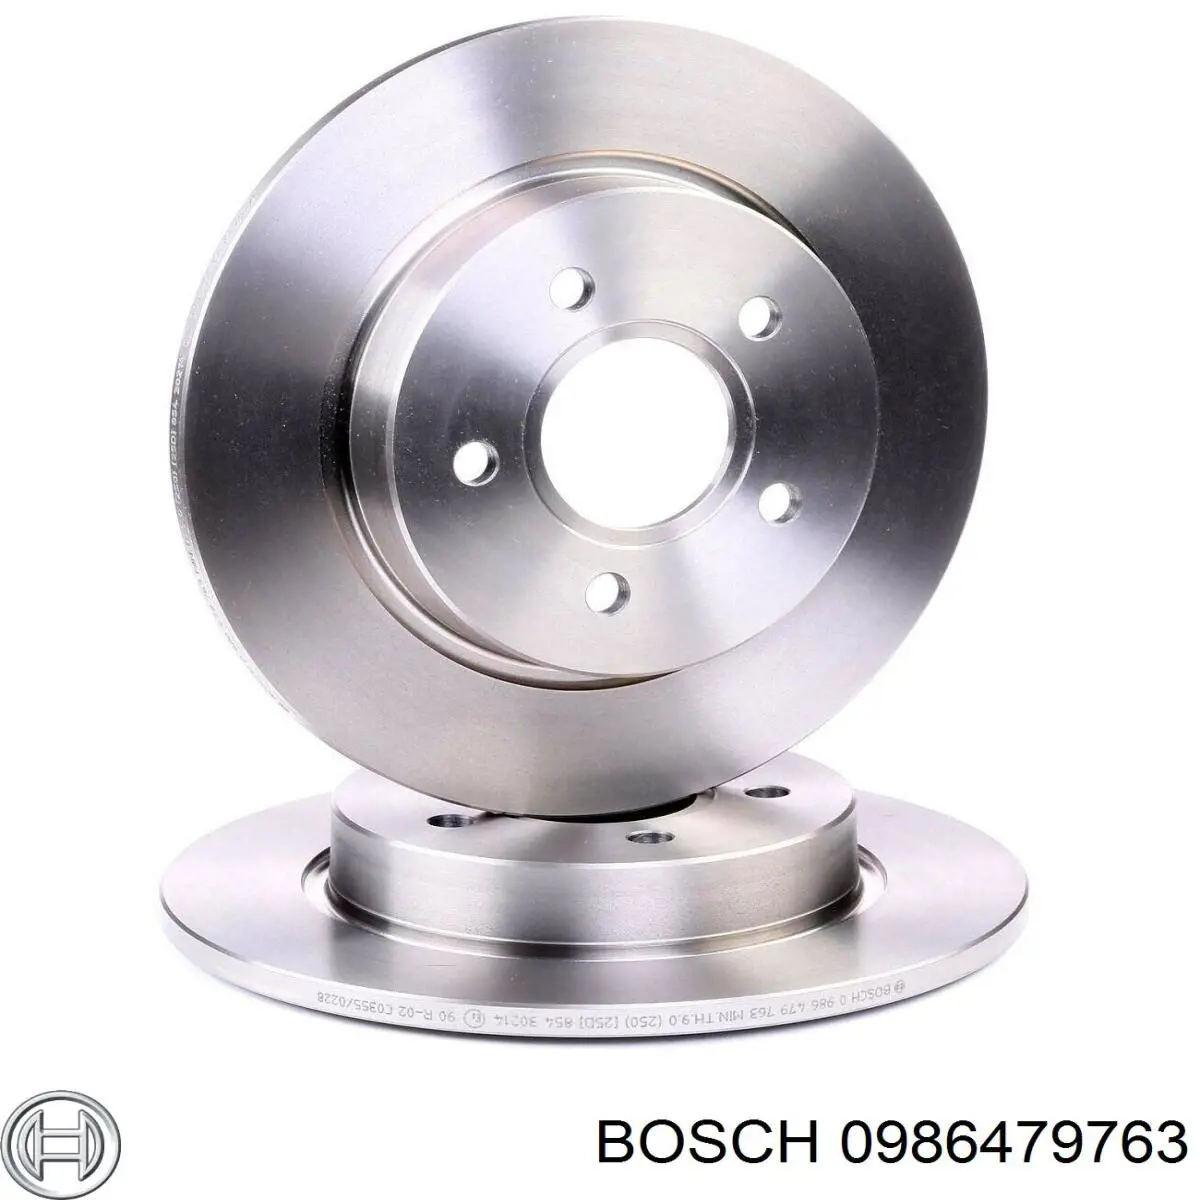 0986479763 Bosch disco de freno trasero